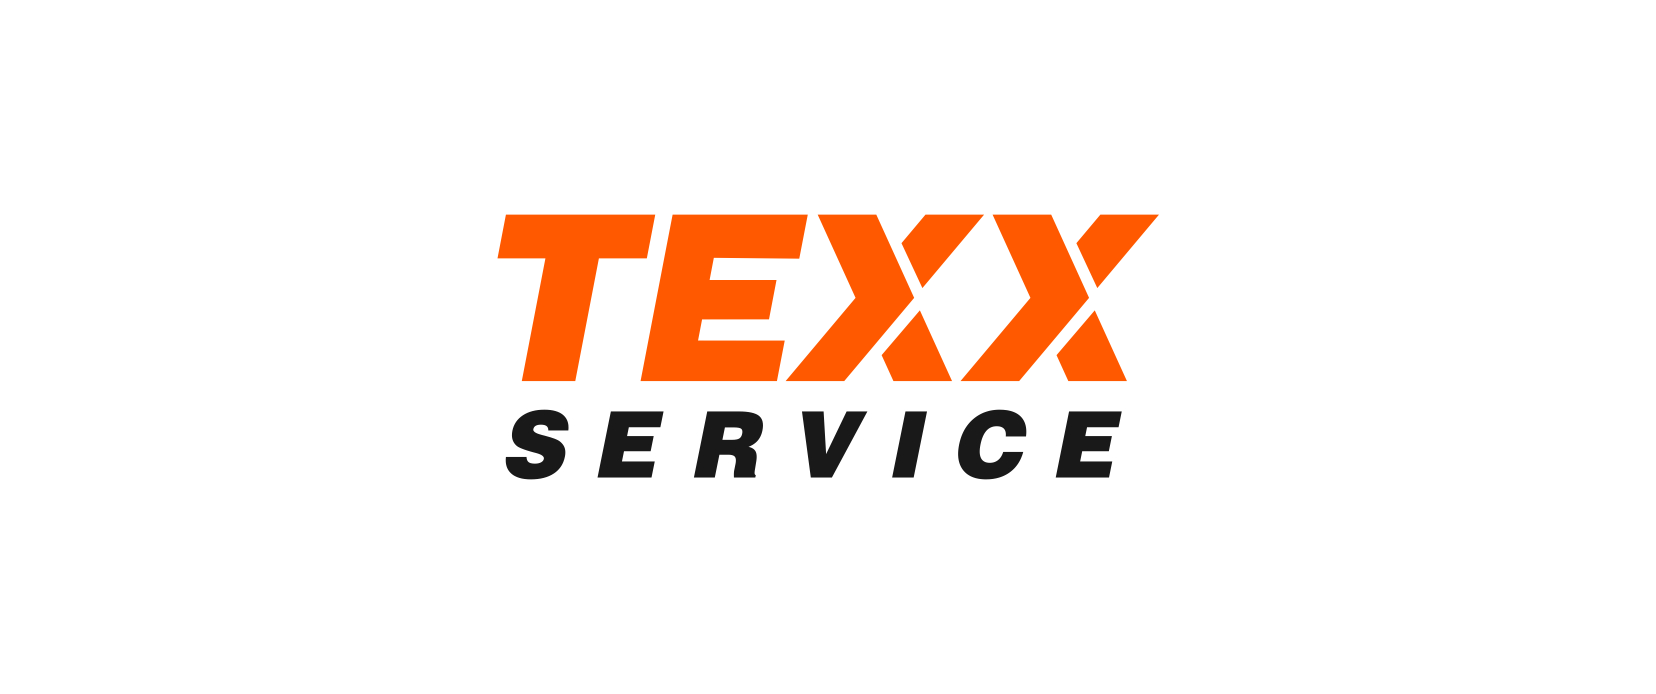 Сеть станций экспресс-сервиса Texx